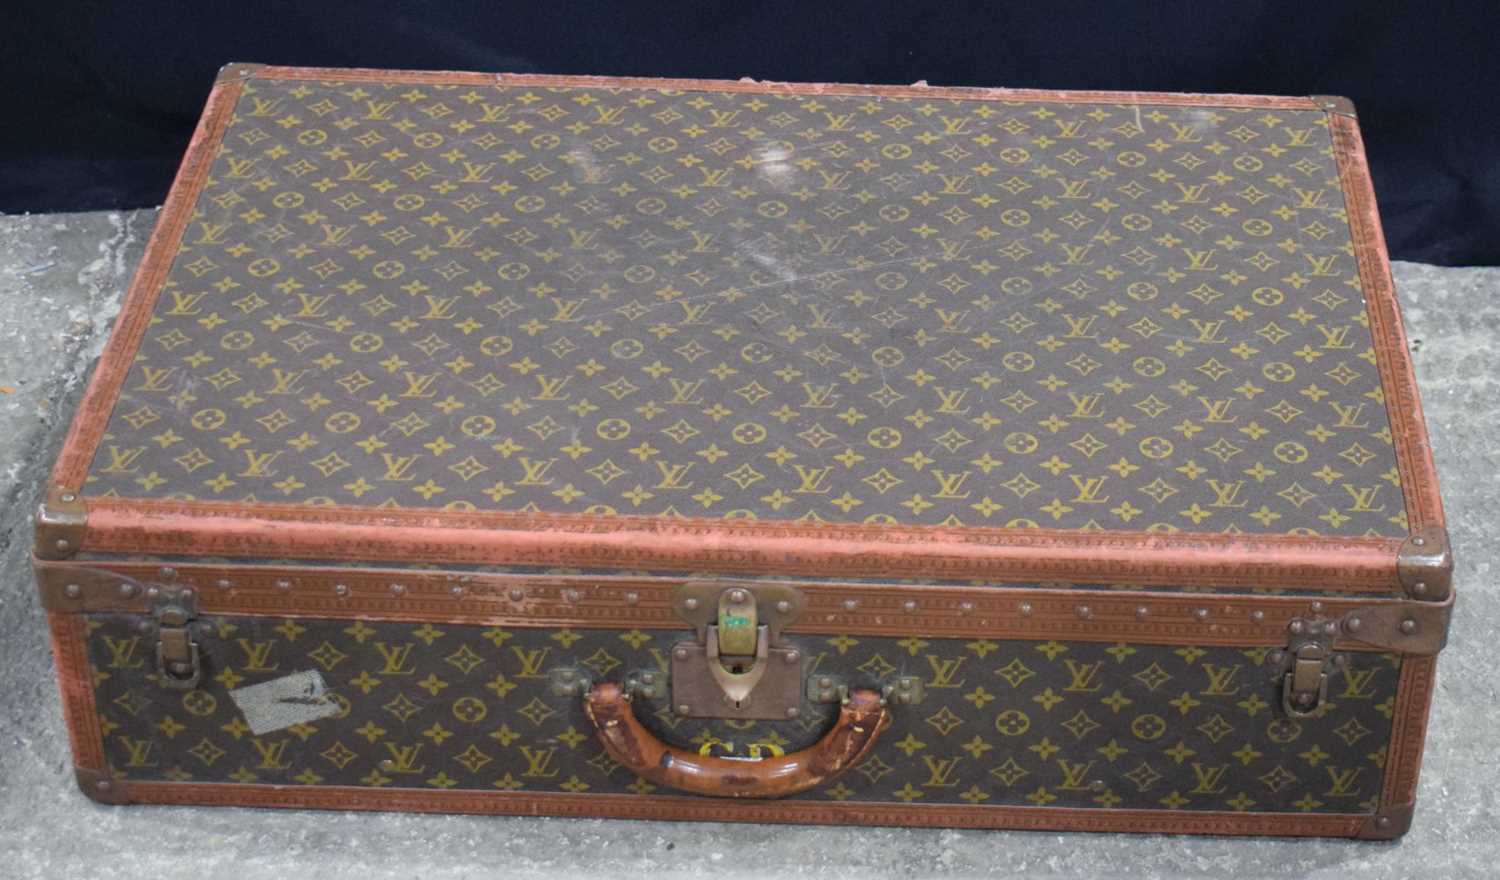 A Louis Vuitton suitcase 22 x 81 x 52 cm. - Image 2 of 16